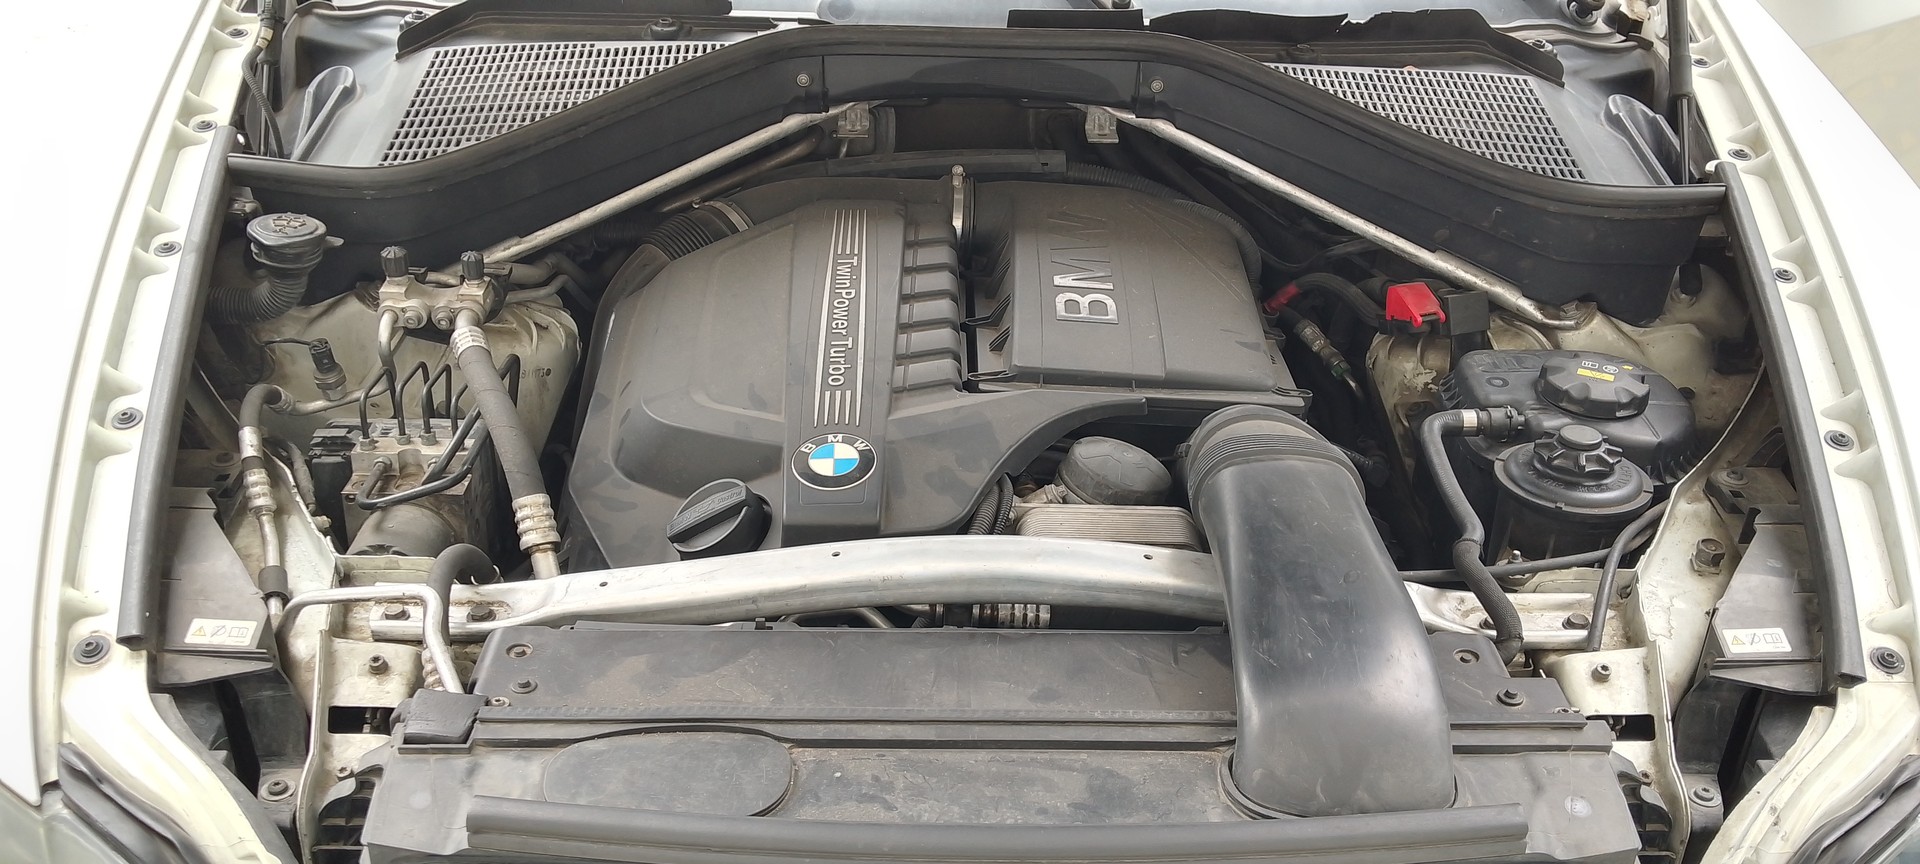 jeepetas y camionetas - BMW X5 Xdrive 35i 2012 Exc.Conds 9